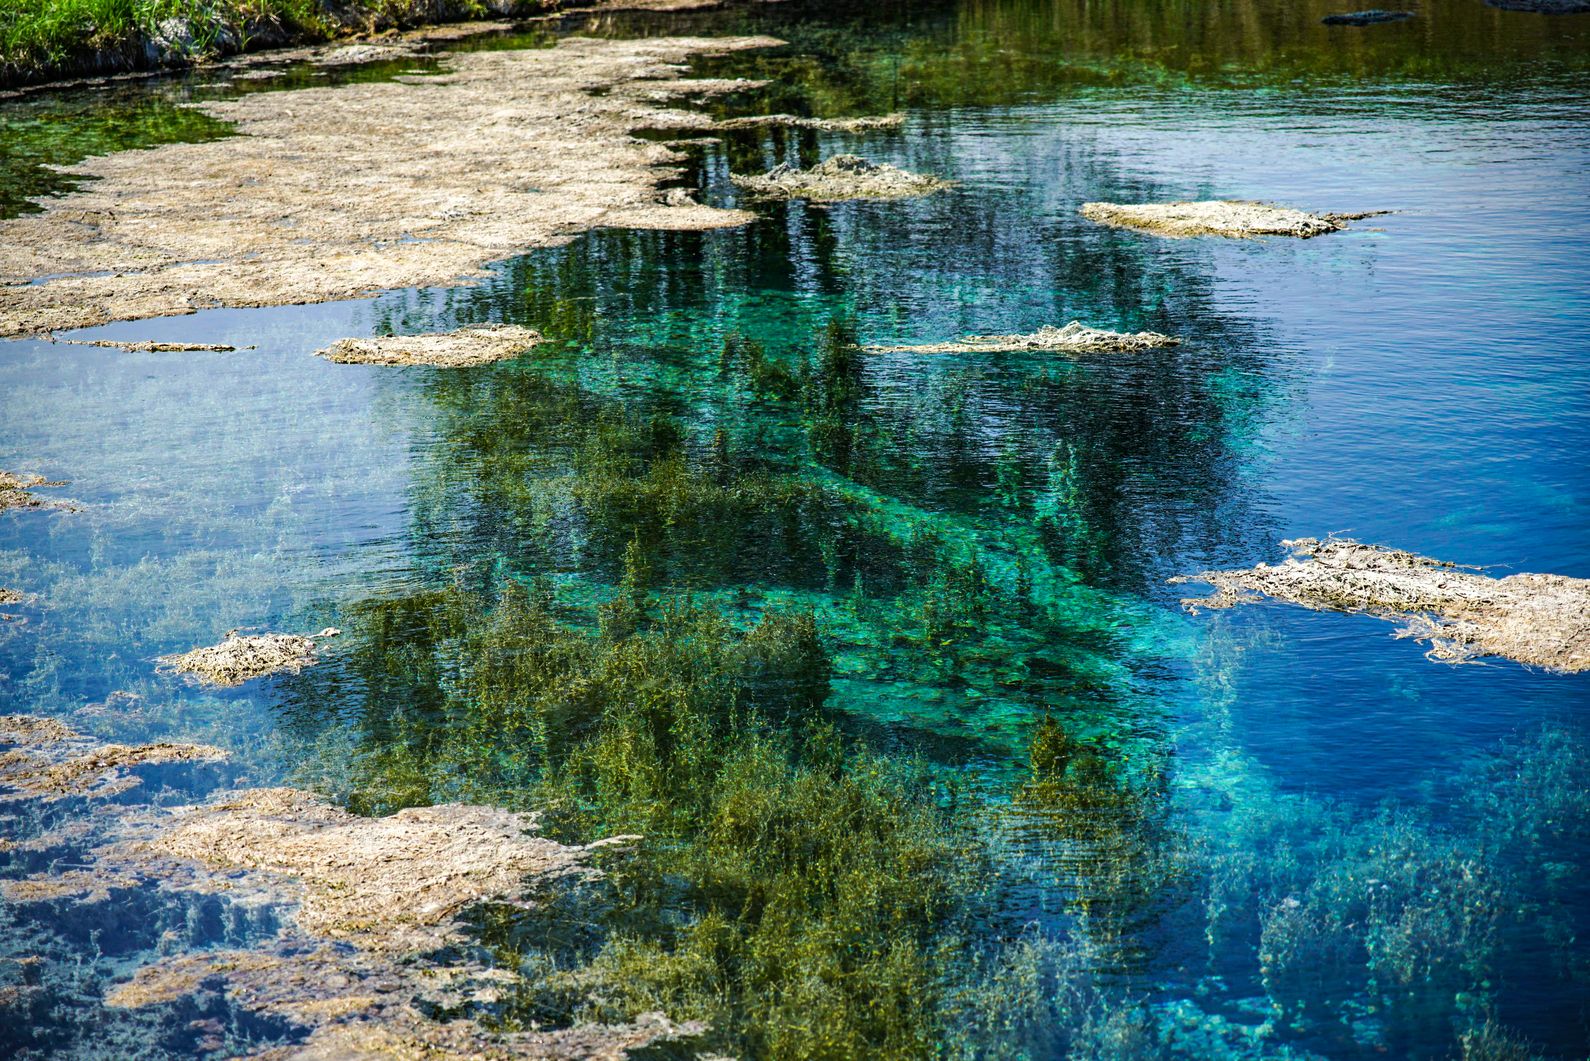 луховицкие голубые озера